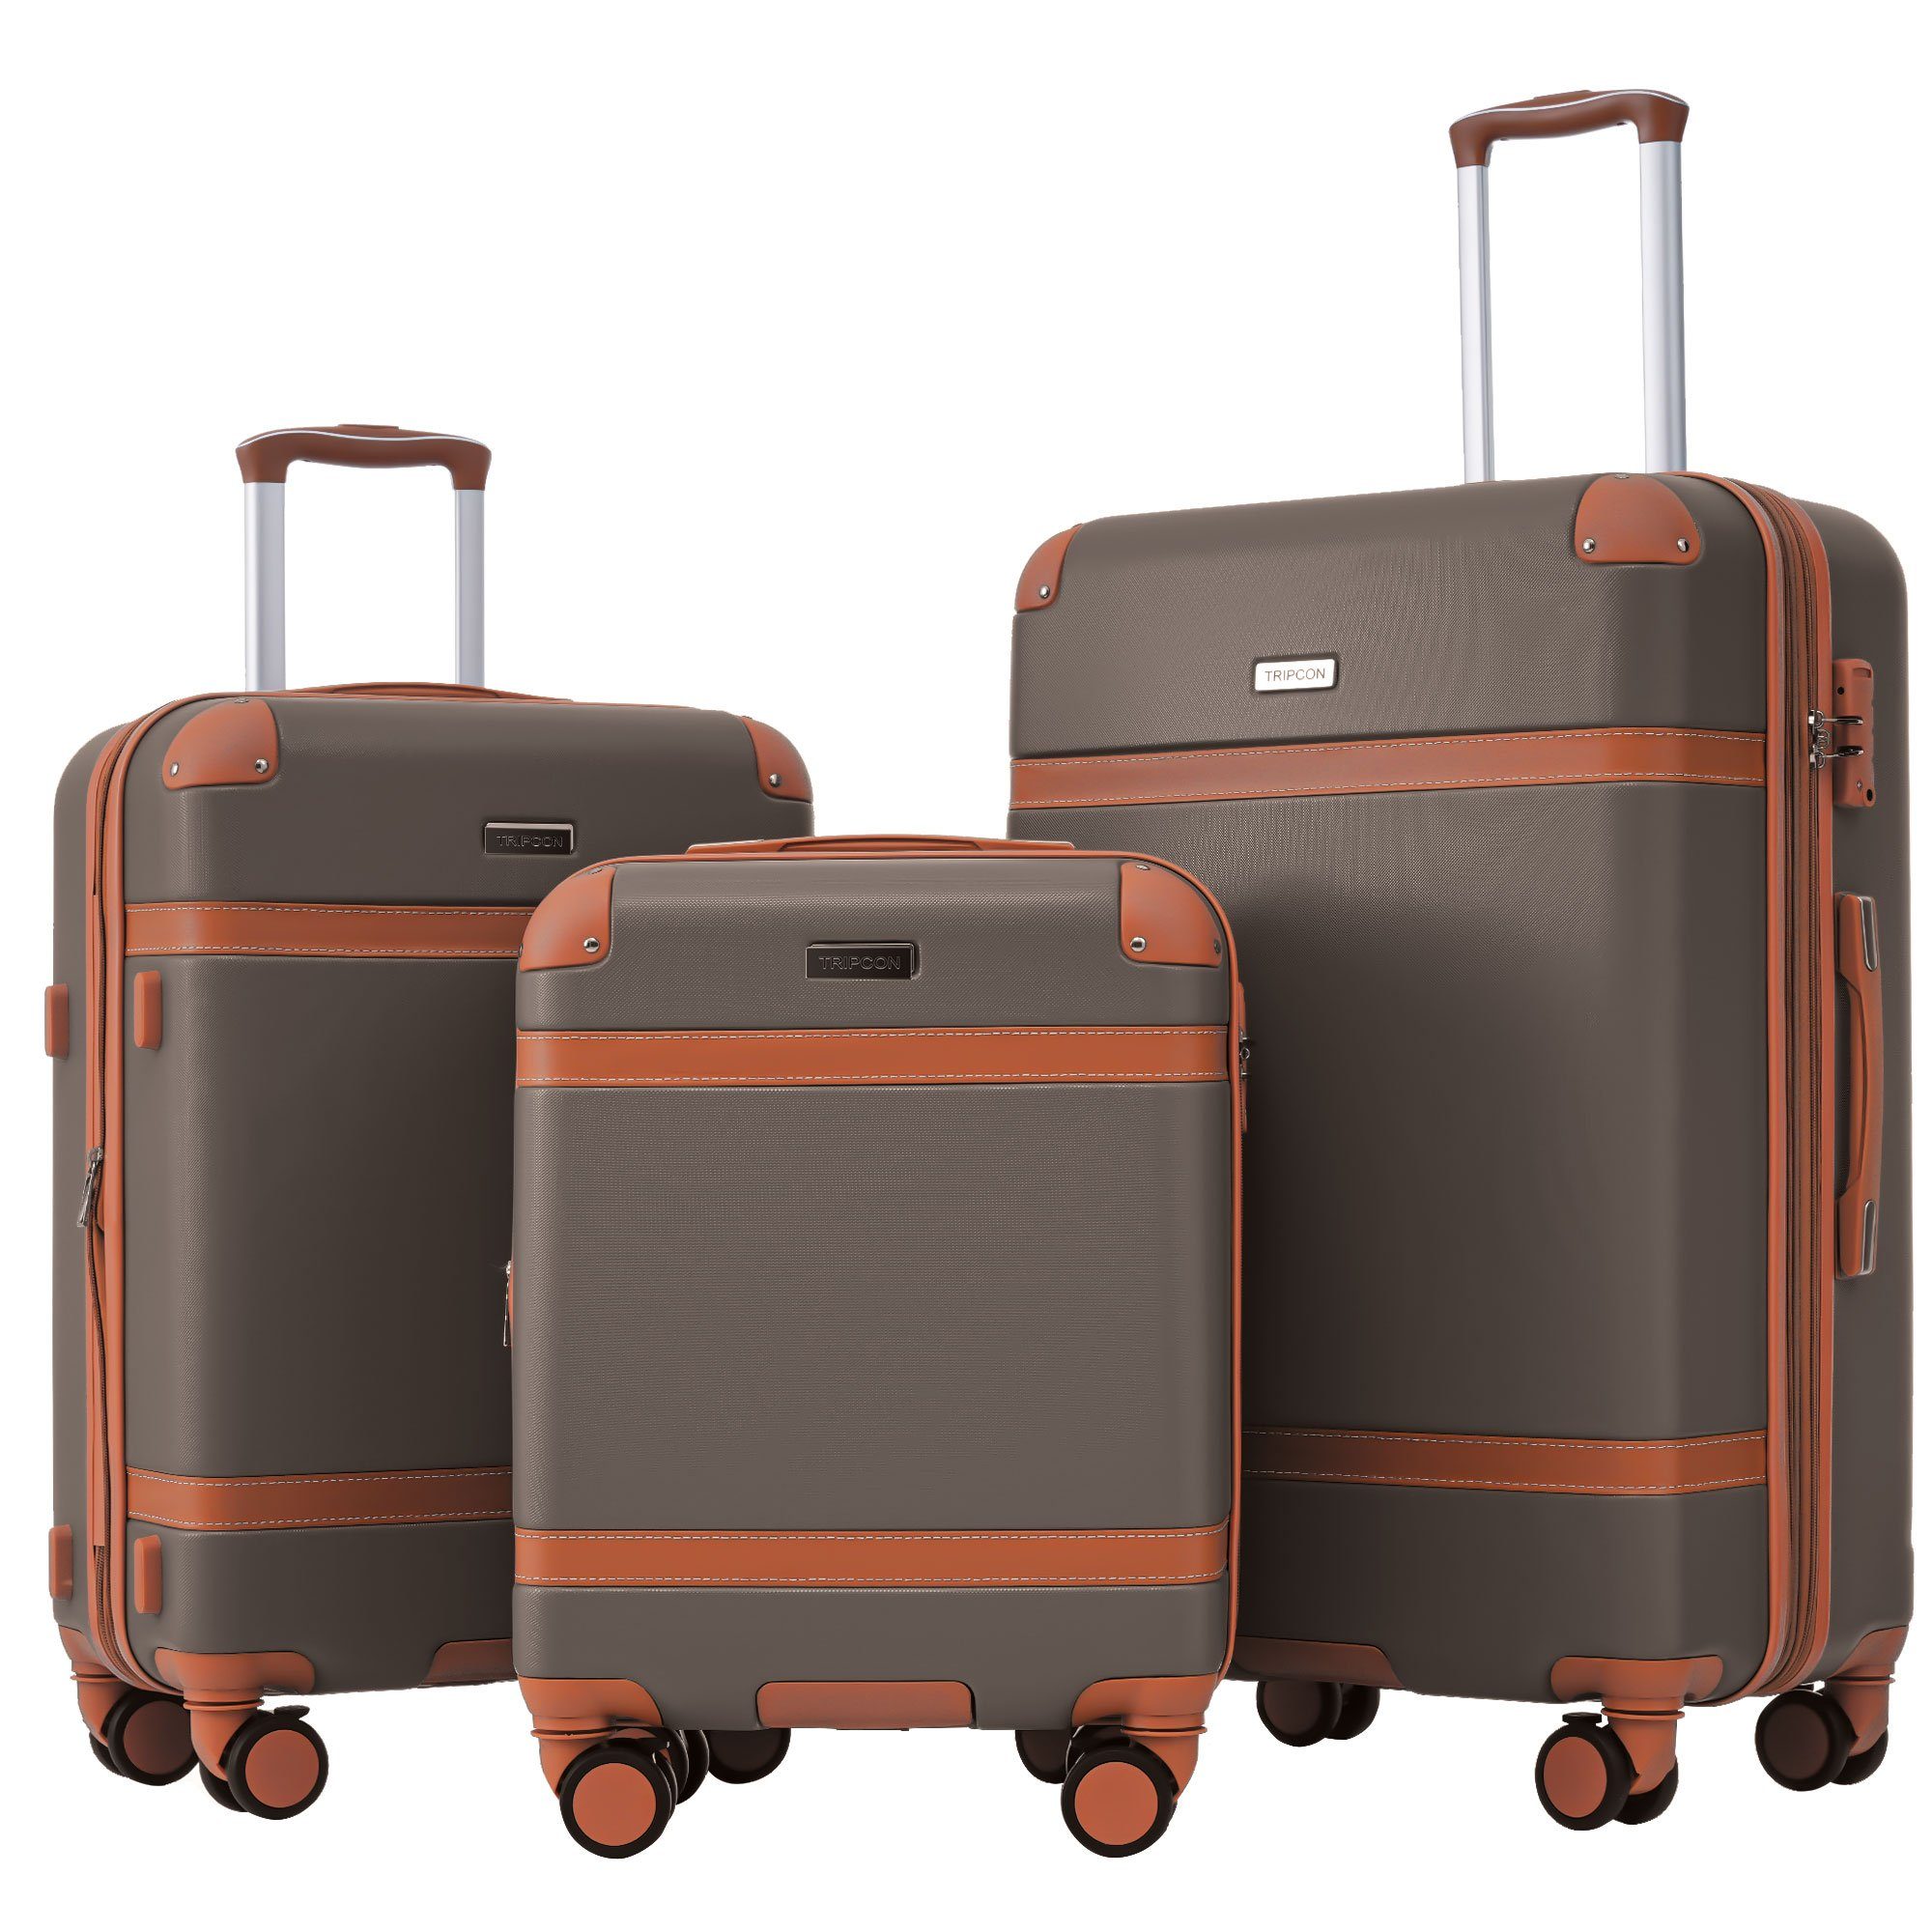 Ulife Trolleyset Kofferset Handgepäck Reisekoffer ABS-Material, TSA Zollschloss, 4 Rollen, (3 tlg) Braun